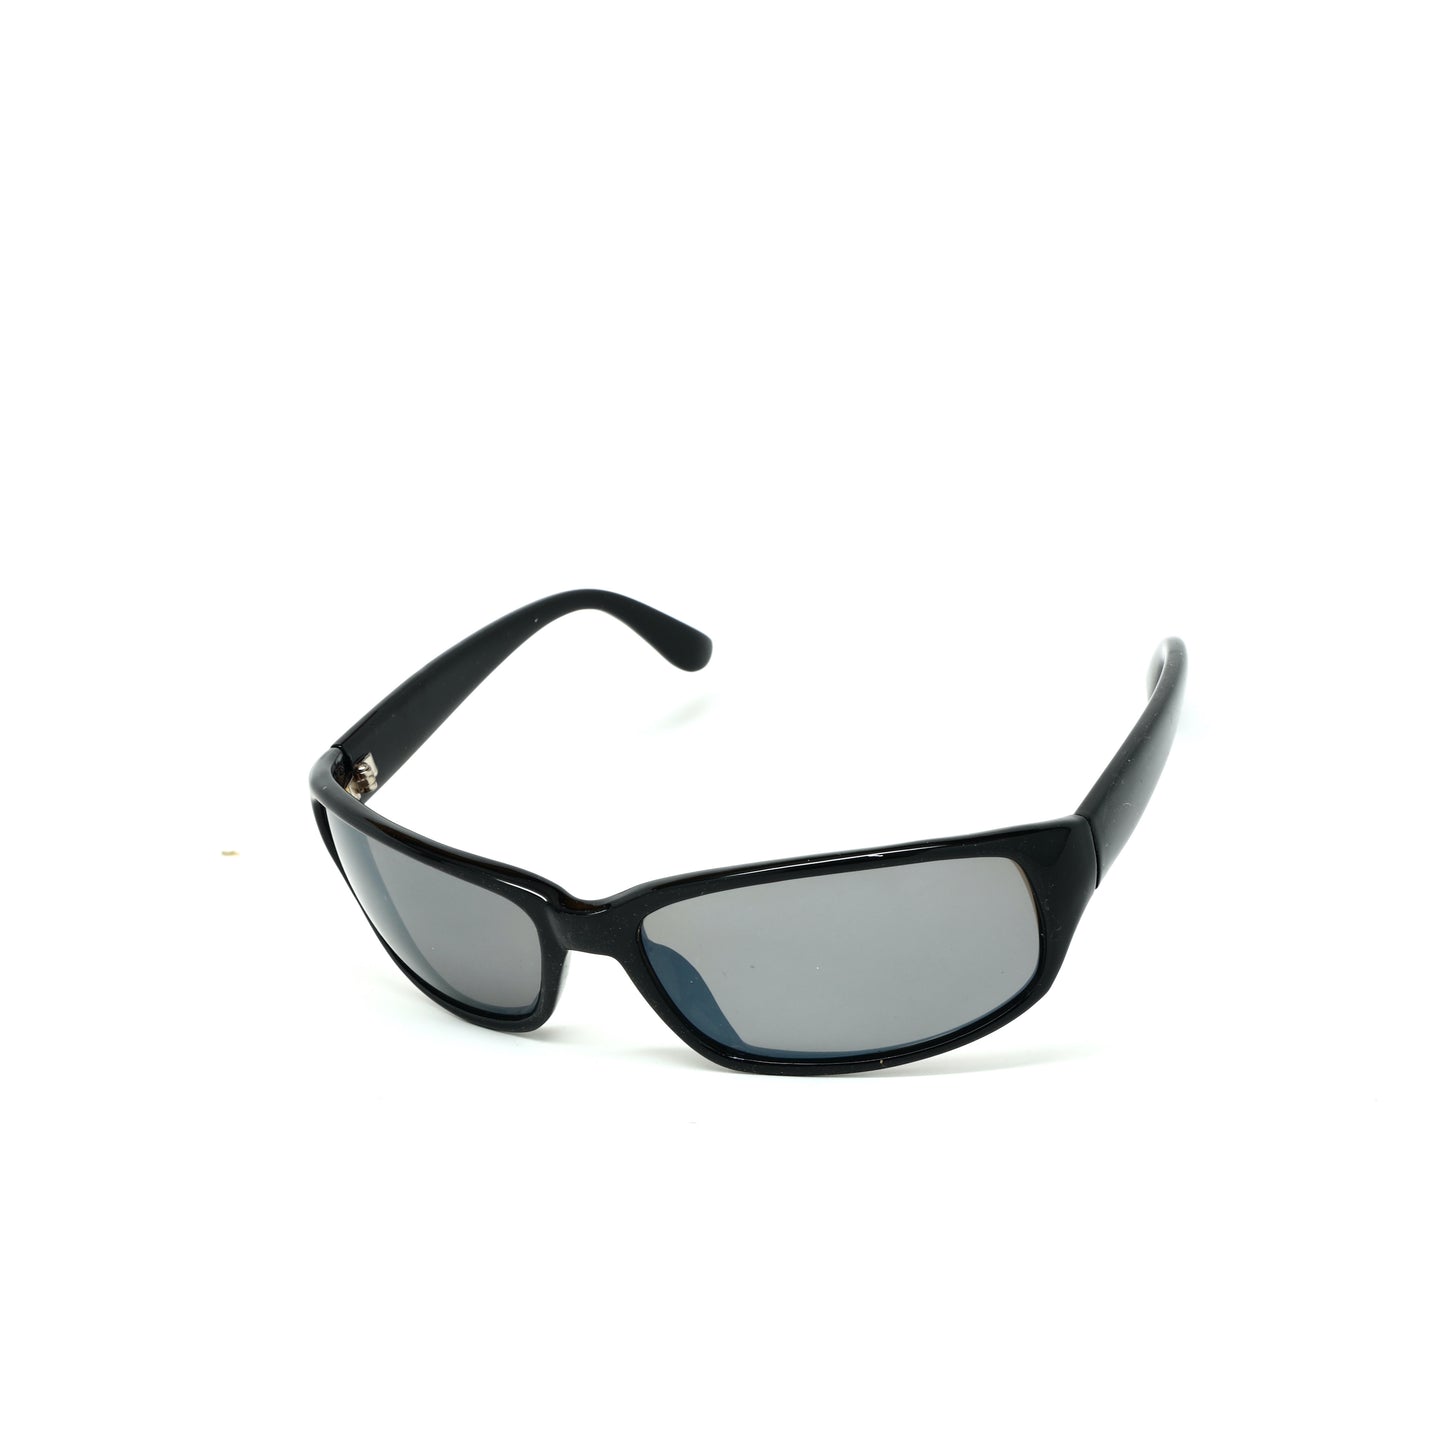 Prototype 9 Deadstock Oversized Rectangle Visor Sunglasses - Black